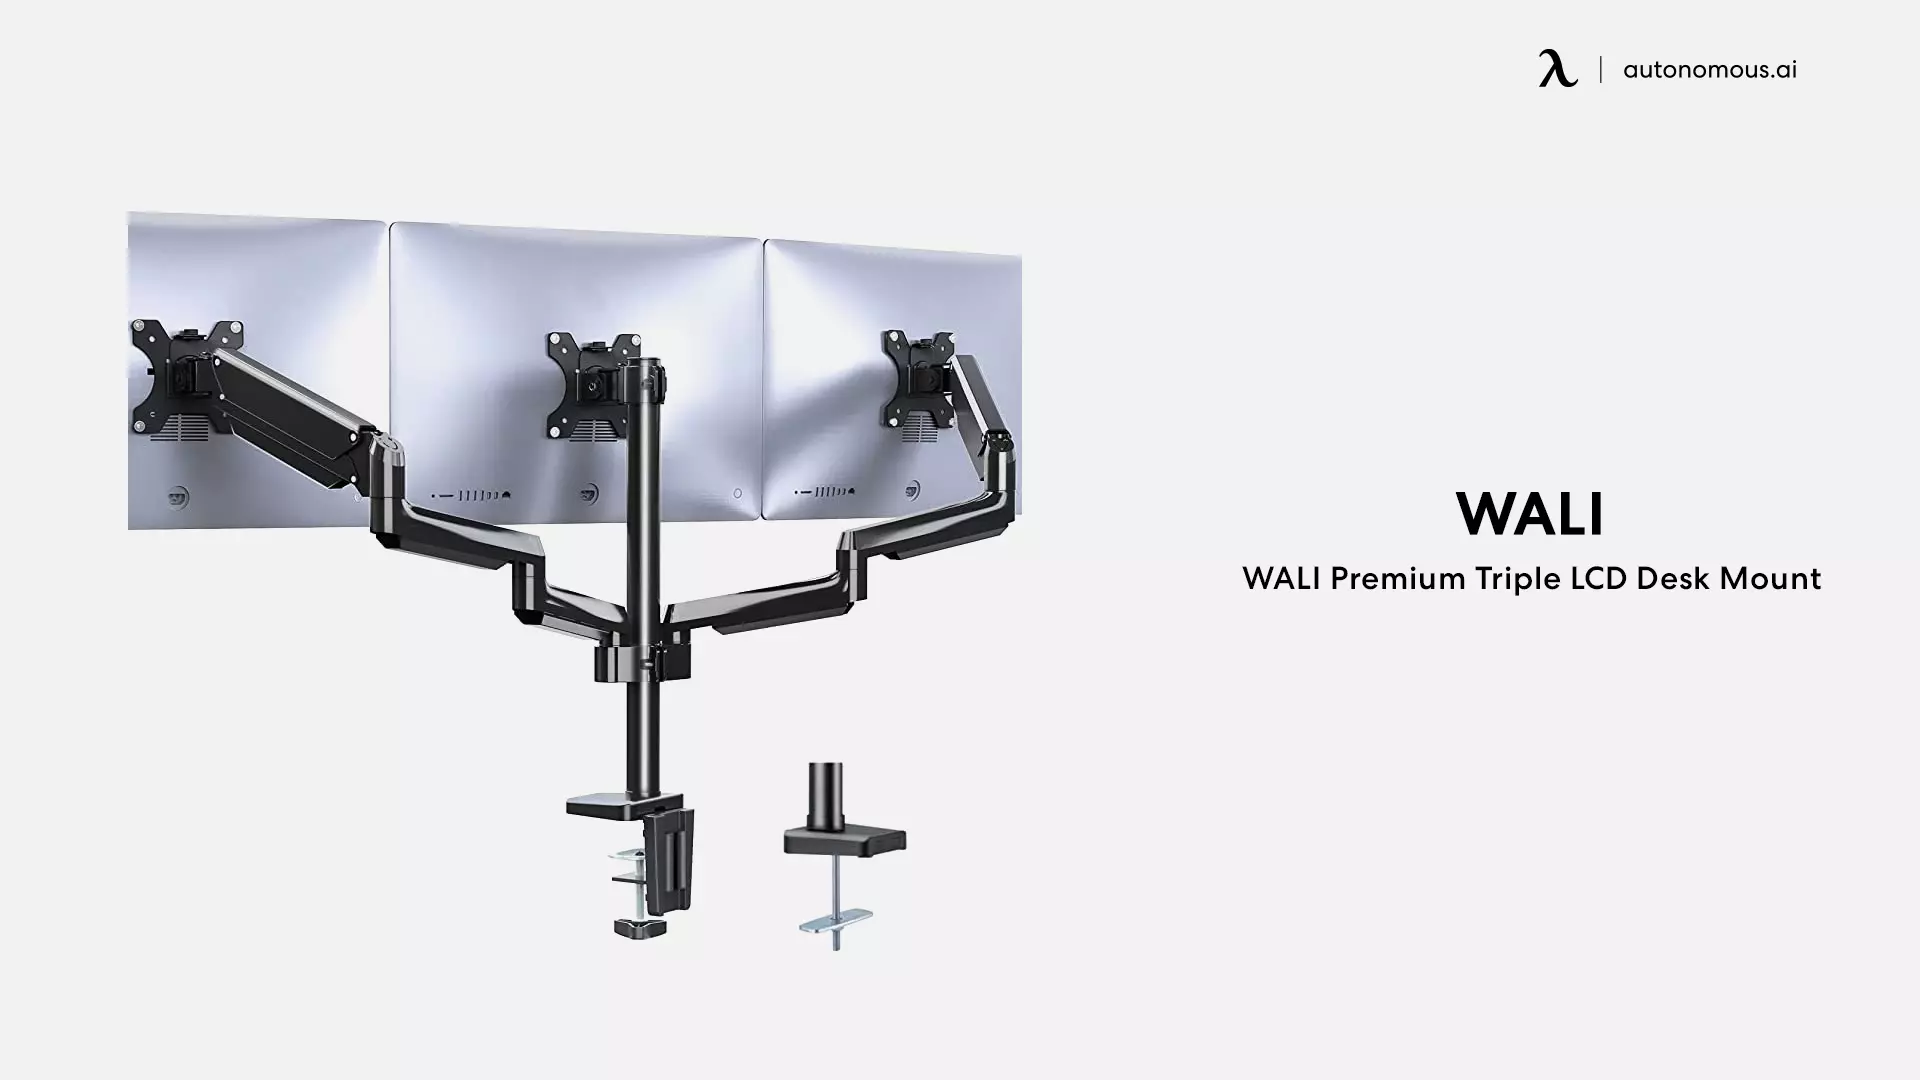 WALI Premium Triple LCD Desk Mount